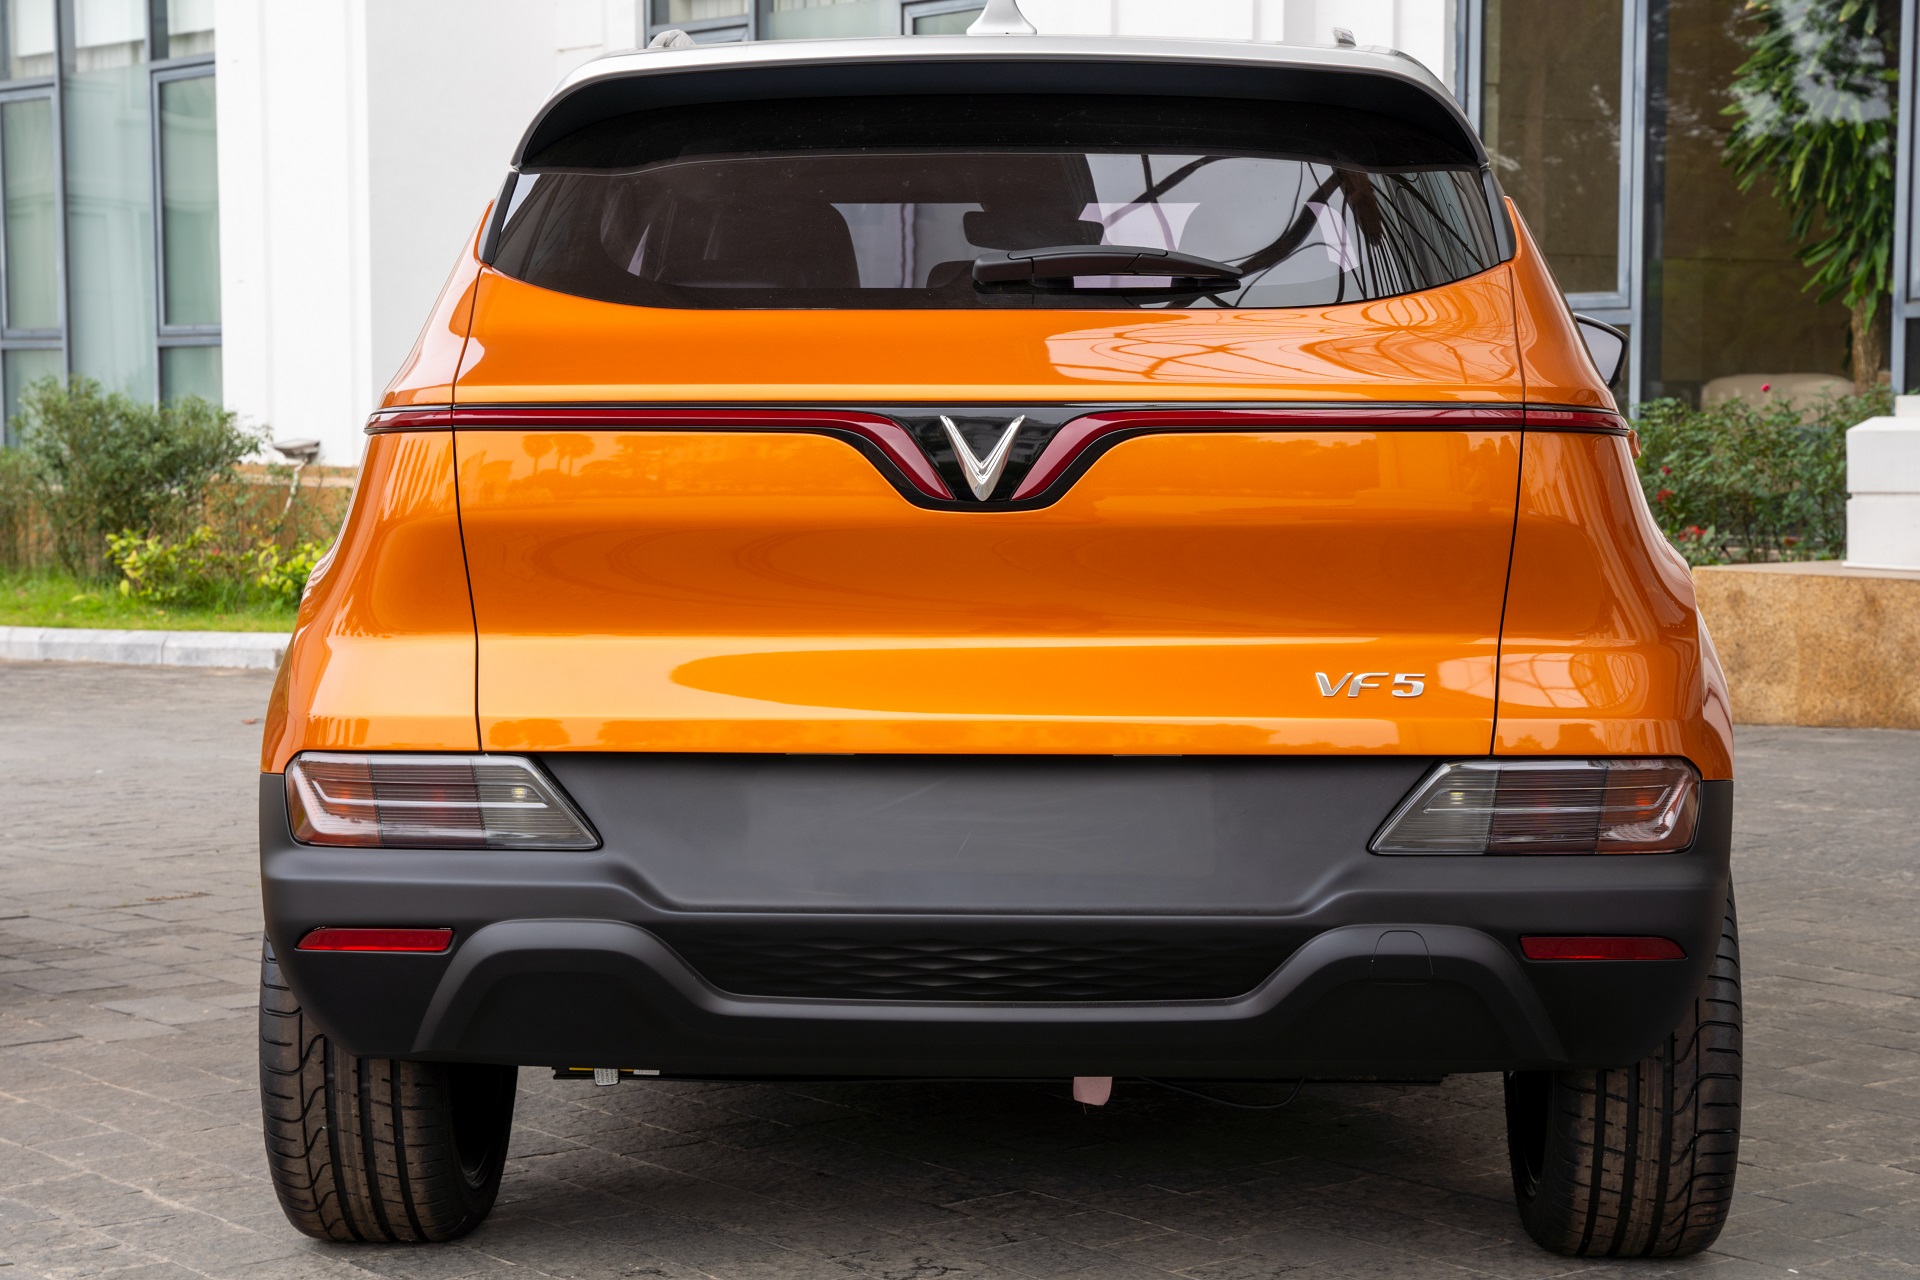 Kinh tế - VinFast công bố giá xe VF 5 Plus, nhận đặt cọc từ ngày 10/12/2022 (Hình 4).